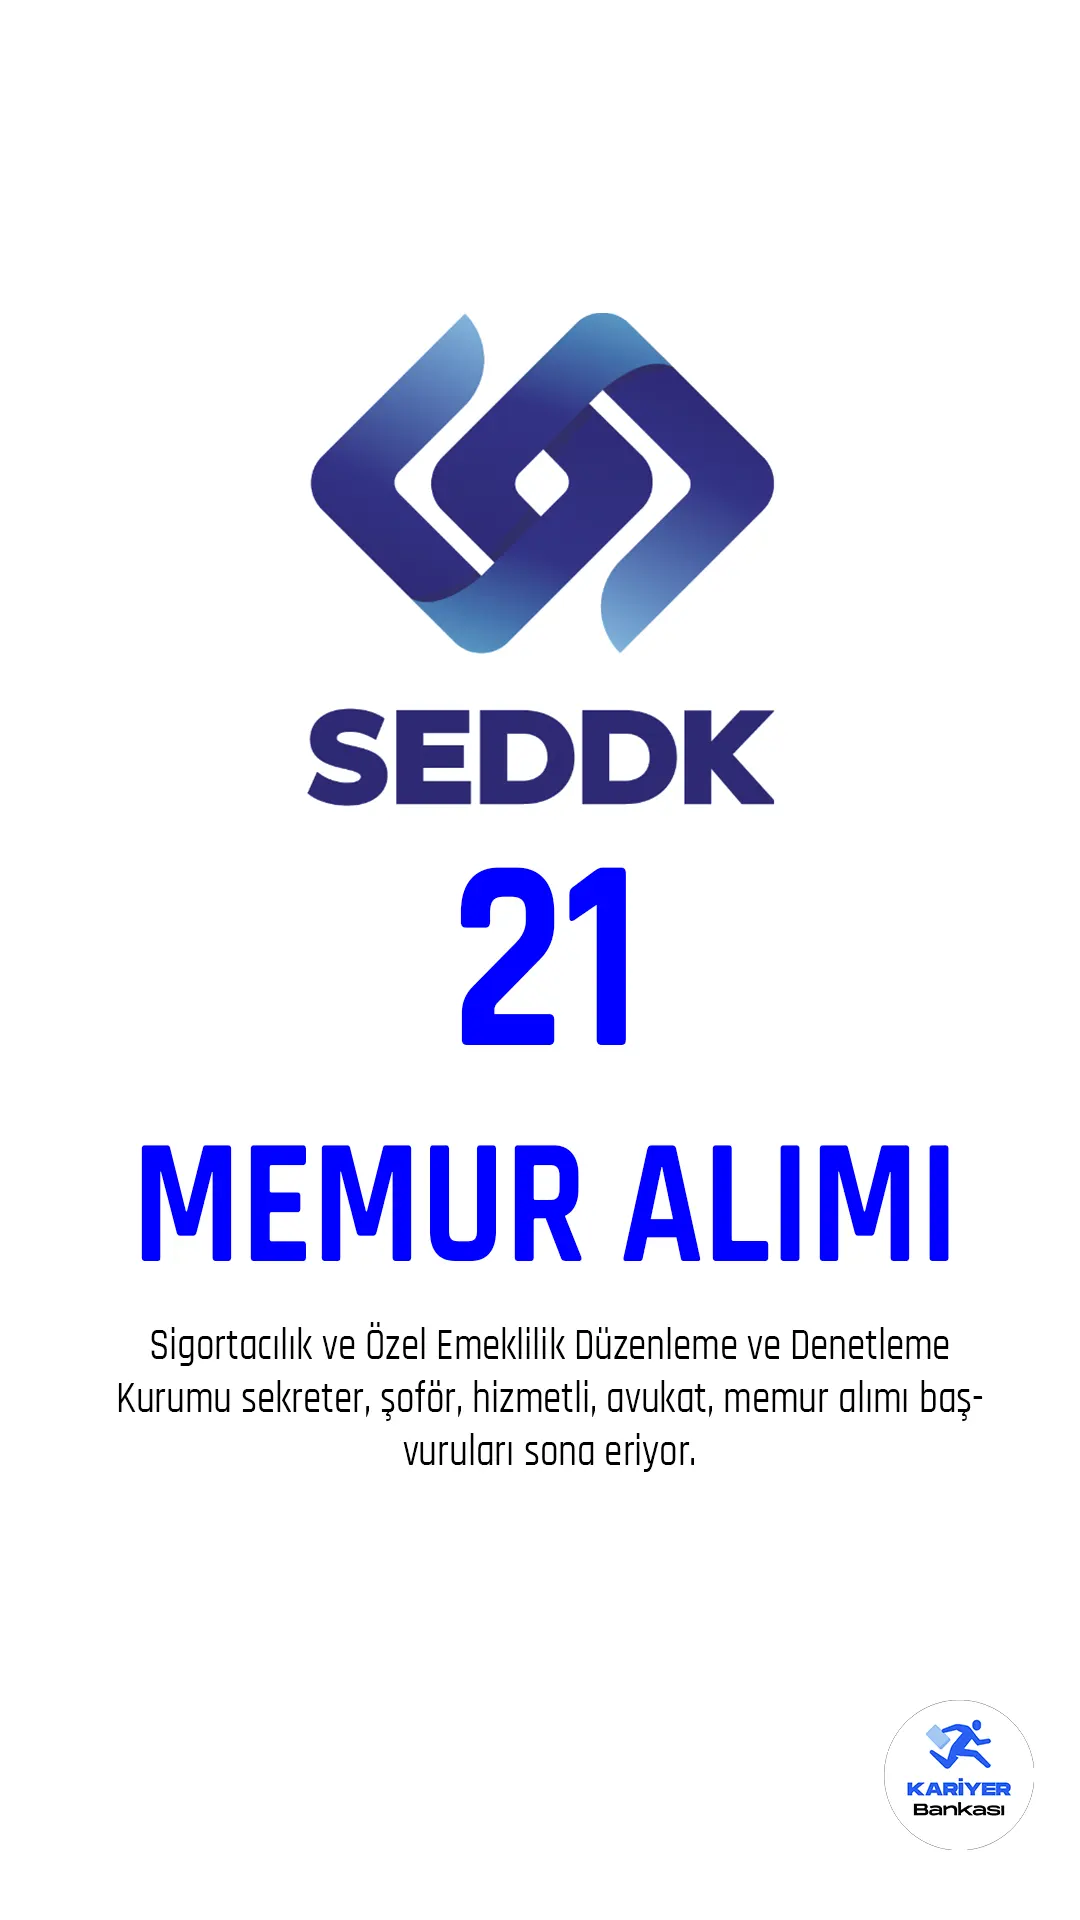 SEDDK memur alımı için 13 Şubat'ta başlayan başvuru işlemlerinde son saatlere giriliyor.